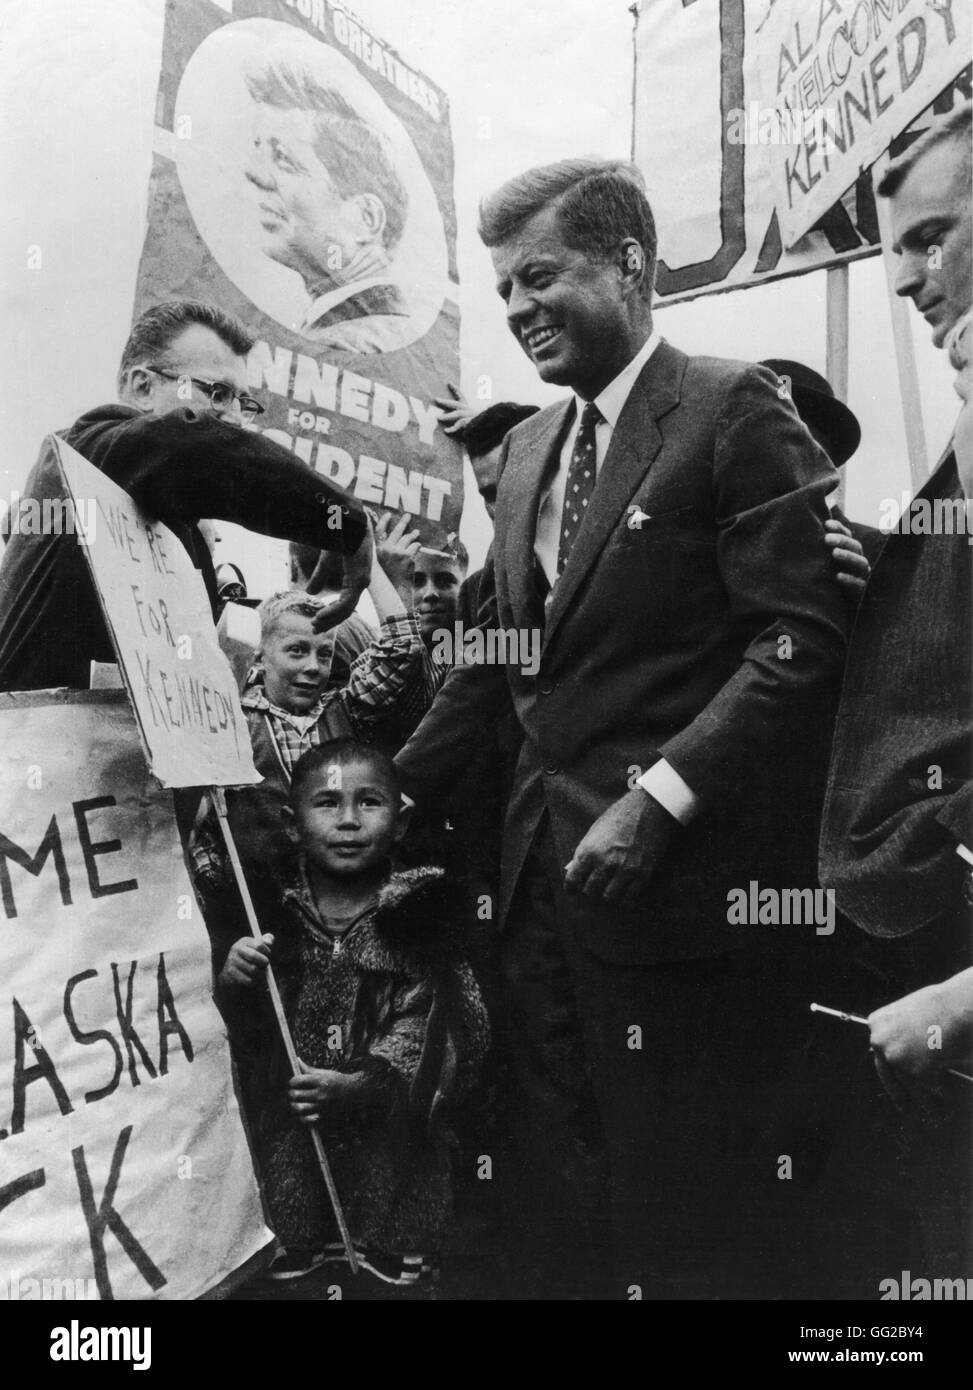 Anchorage, Alaska. John Kennedy, recibiendo una calurosa acogida durante su campaña electoral de 1960 los Archivos Nacionales de Estados Unidos. Washington Foto de stock